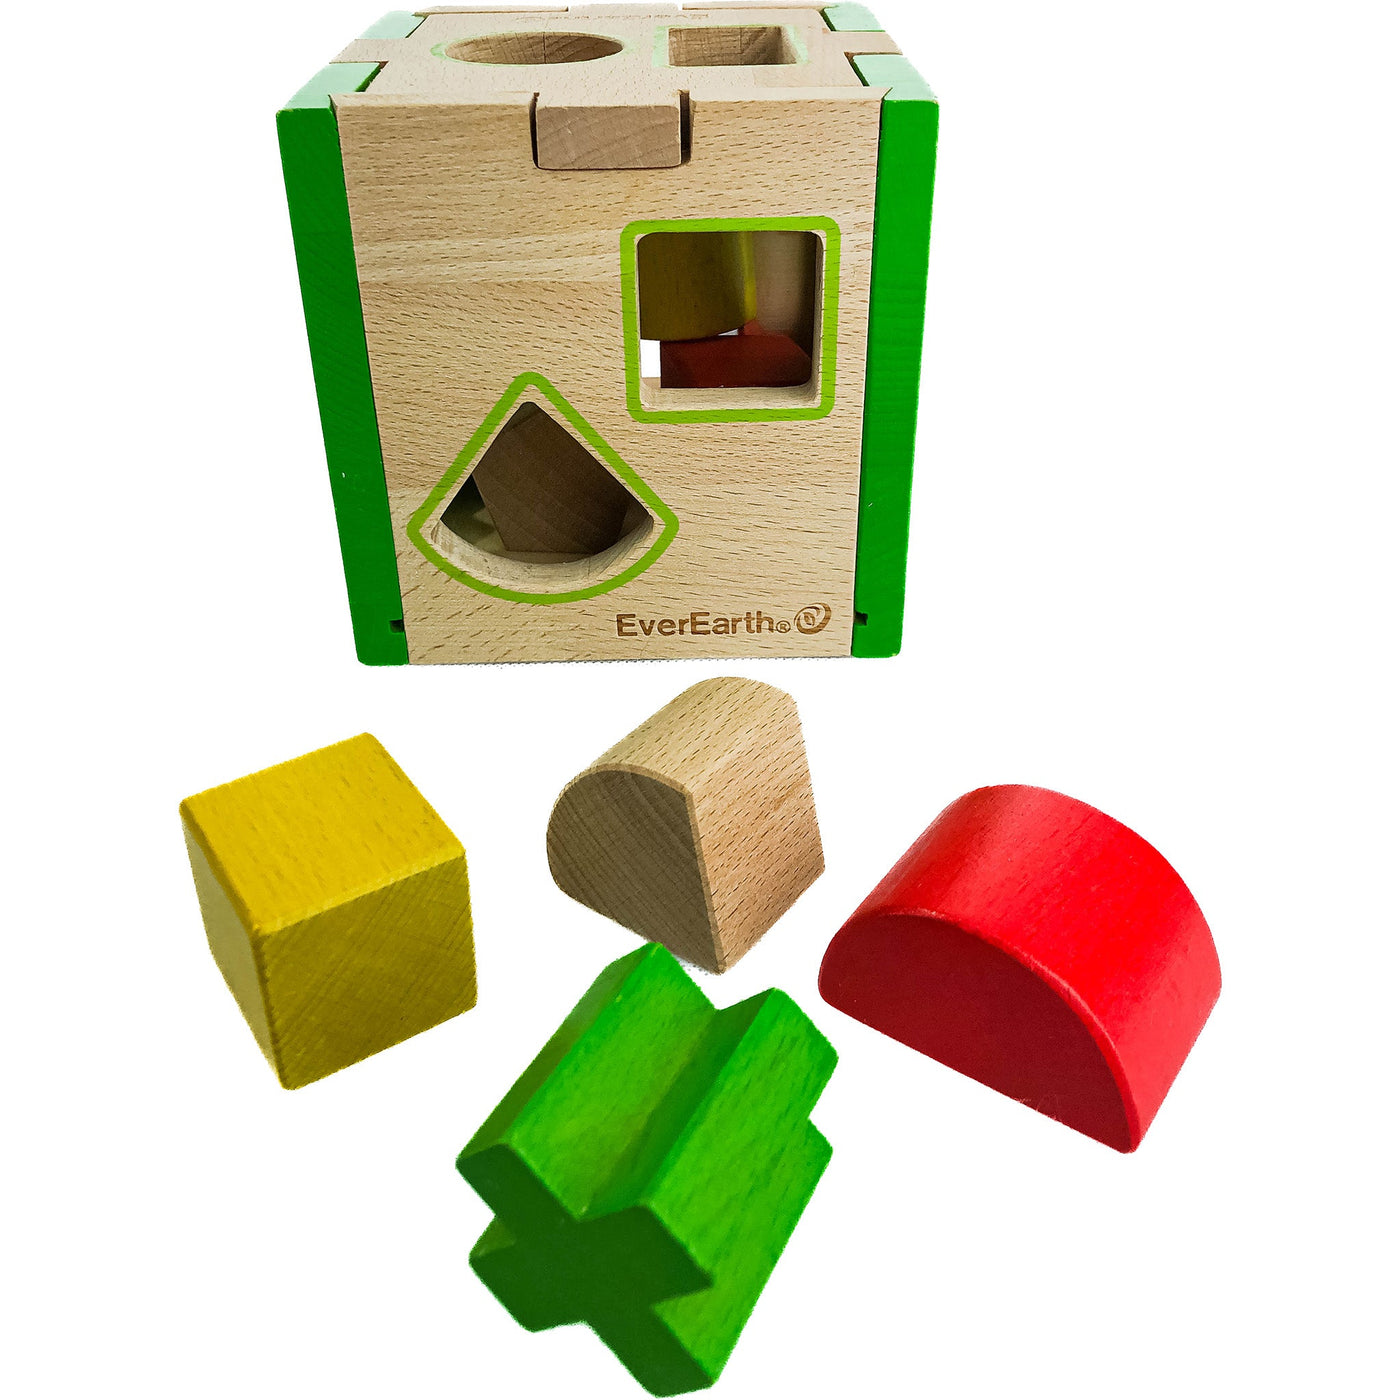 Boîte à formes géométriques "Boîte à formes" de seconde main en bois pour enfant à partir de 18 mois - photo secondaire